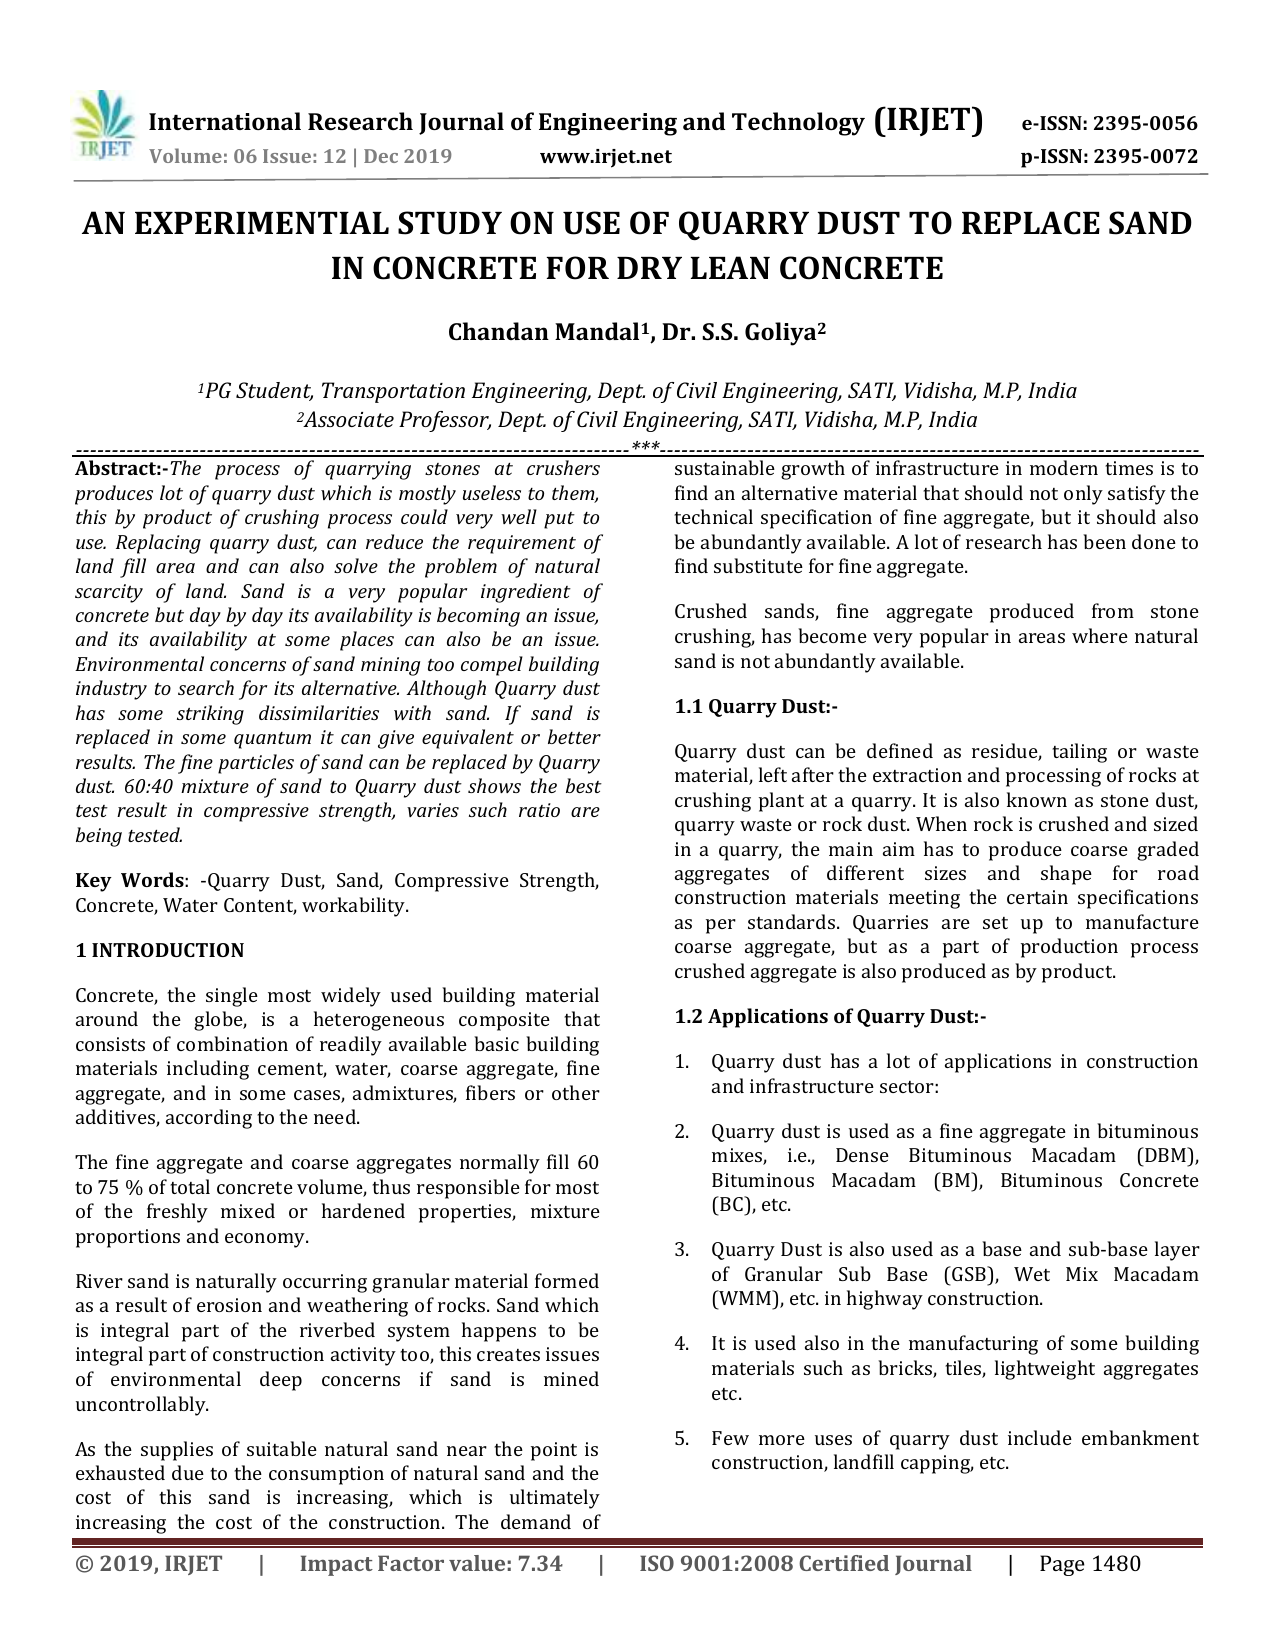 literature review for quarry dust concrete